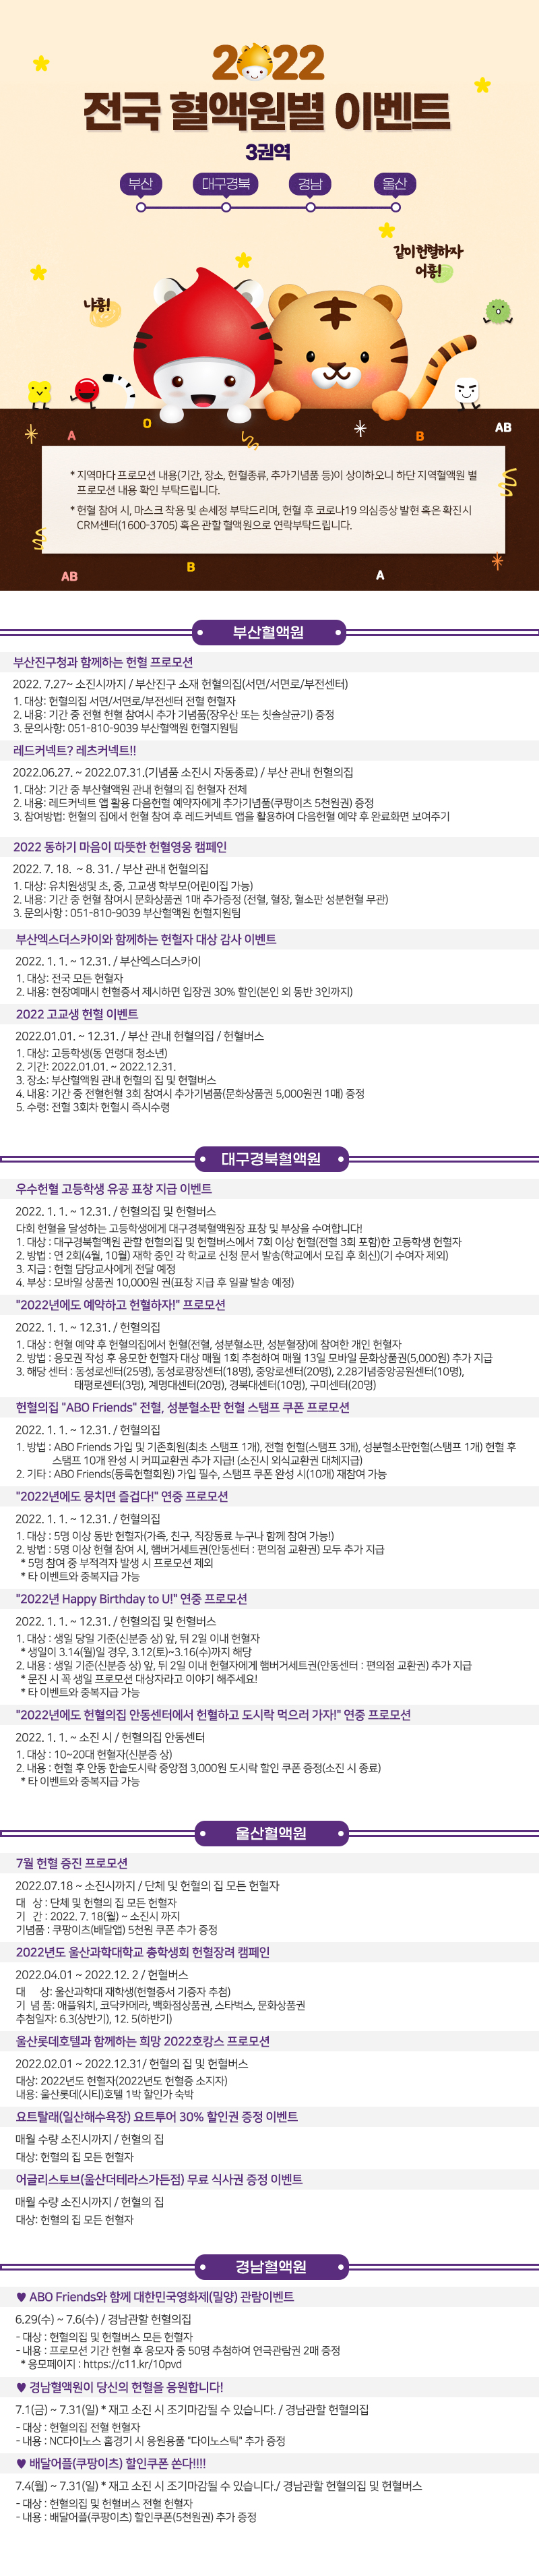 2022 혈액원별 프로모션(부산/대구경북/경남/울산)